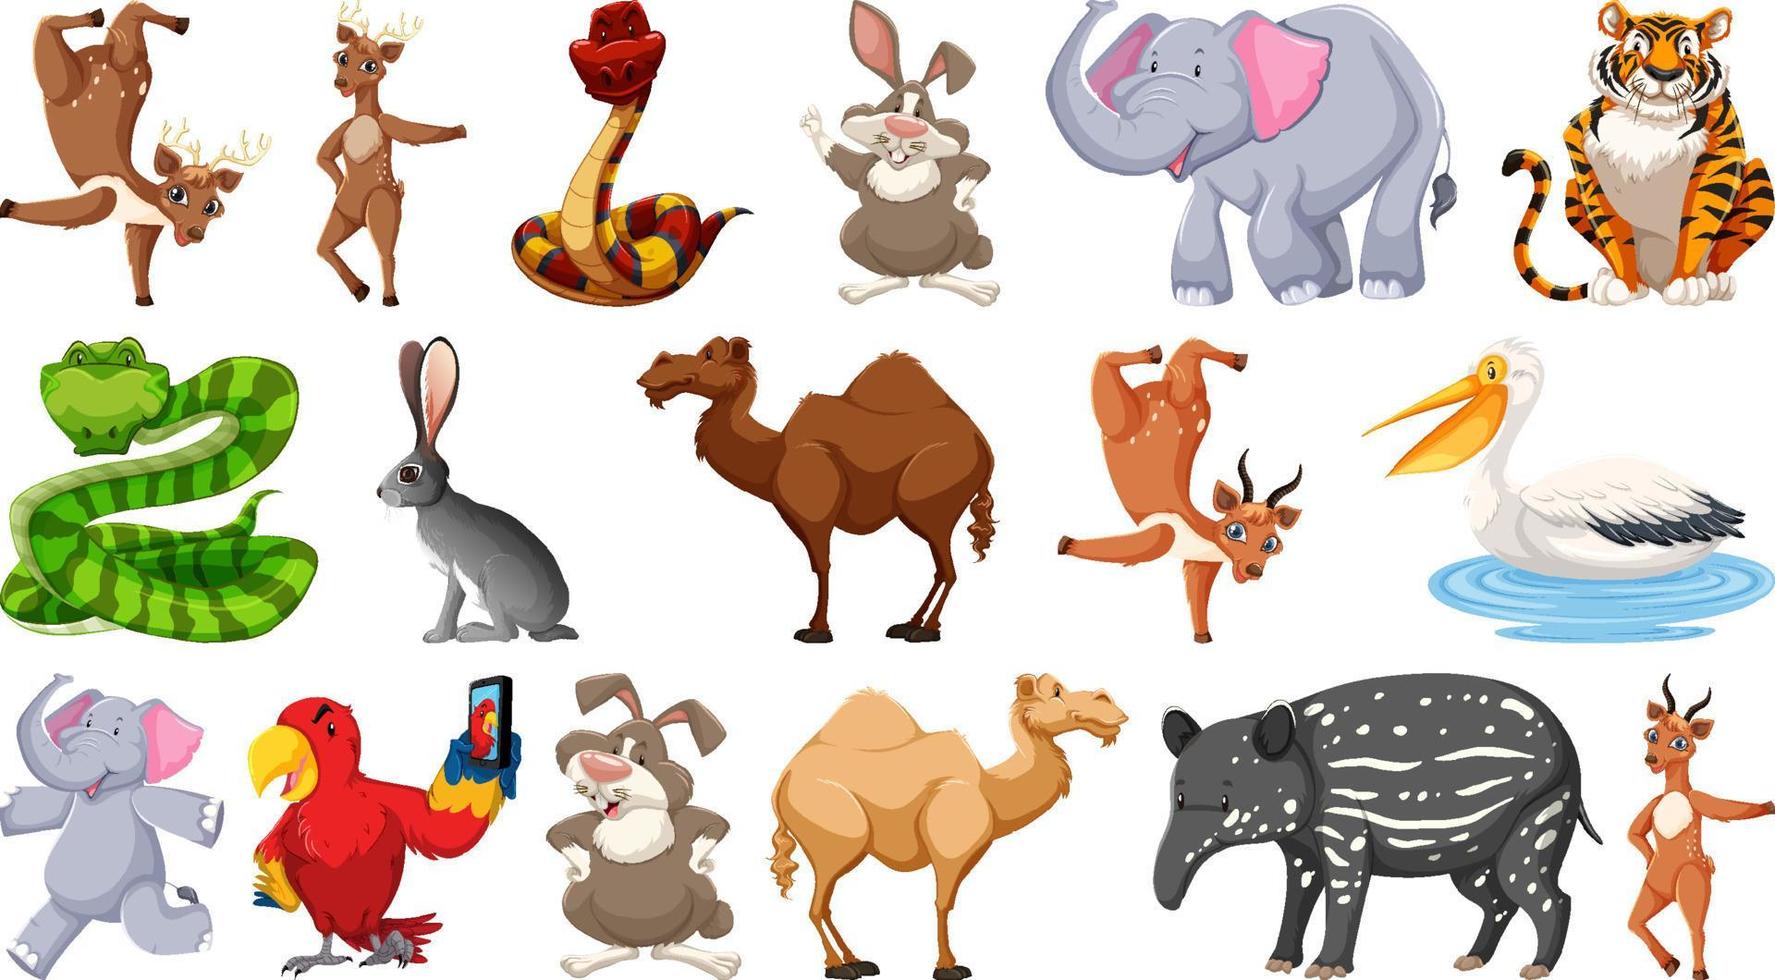 Reihe von verschiedenen wilden Tieren Zeichentrickfiguren vektor